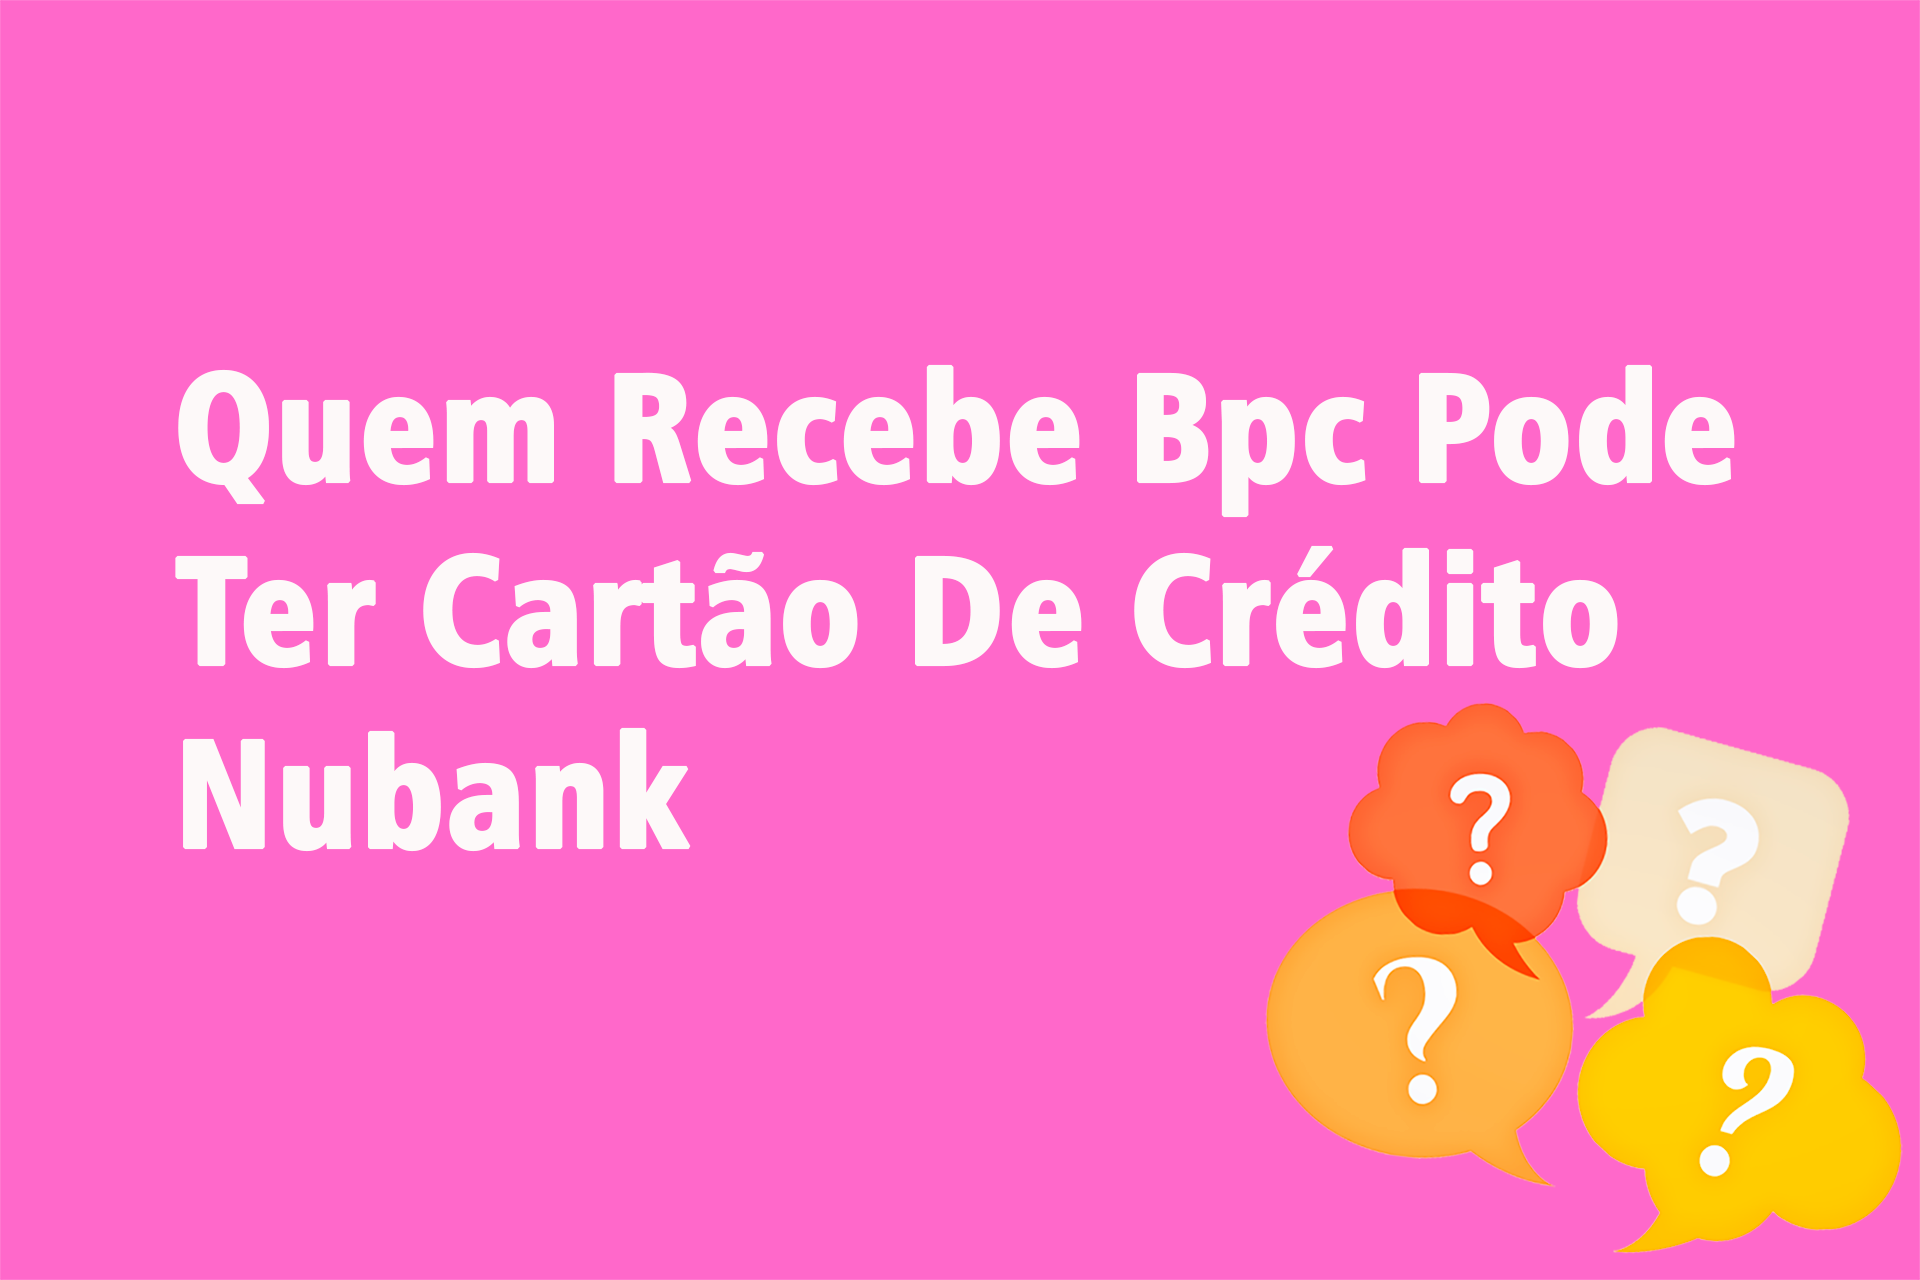 Quem Recebe Bpc Pode Ter Cartão De Crédito Nubank?